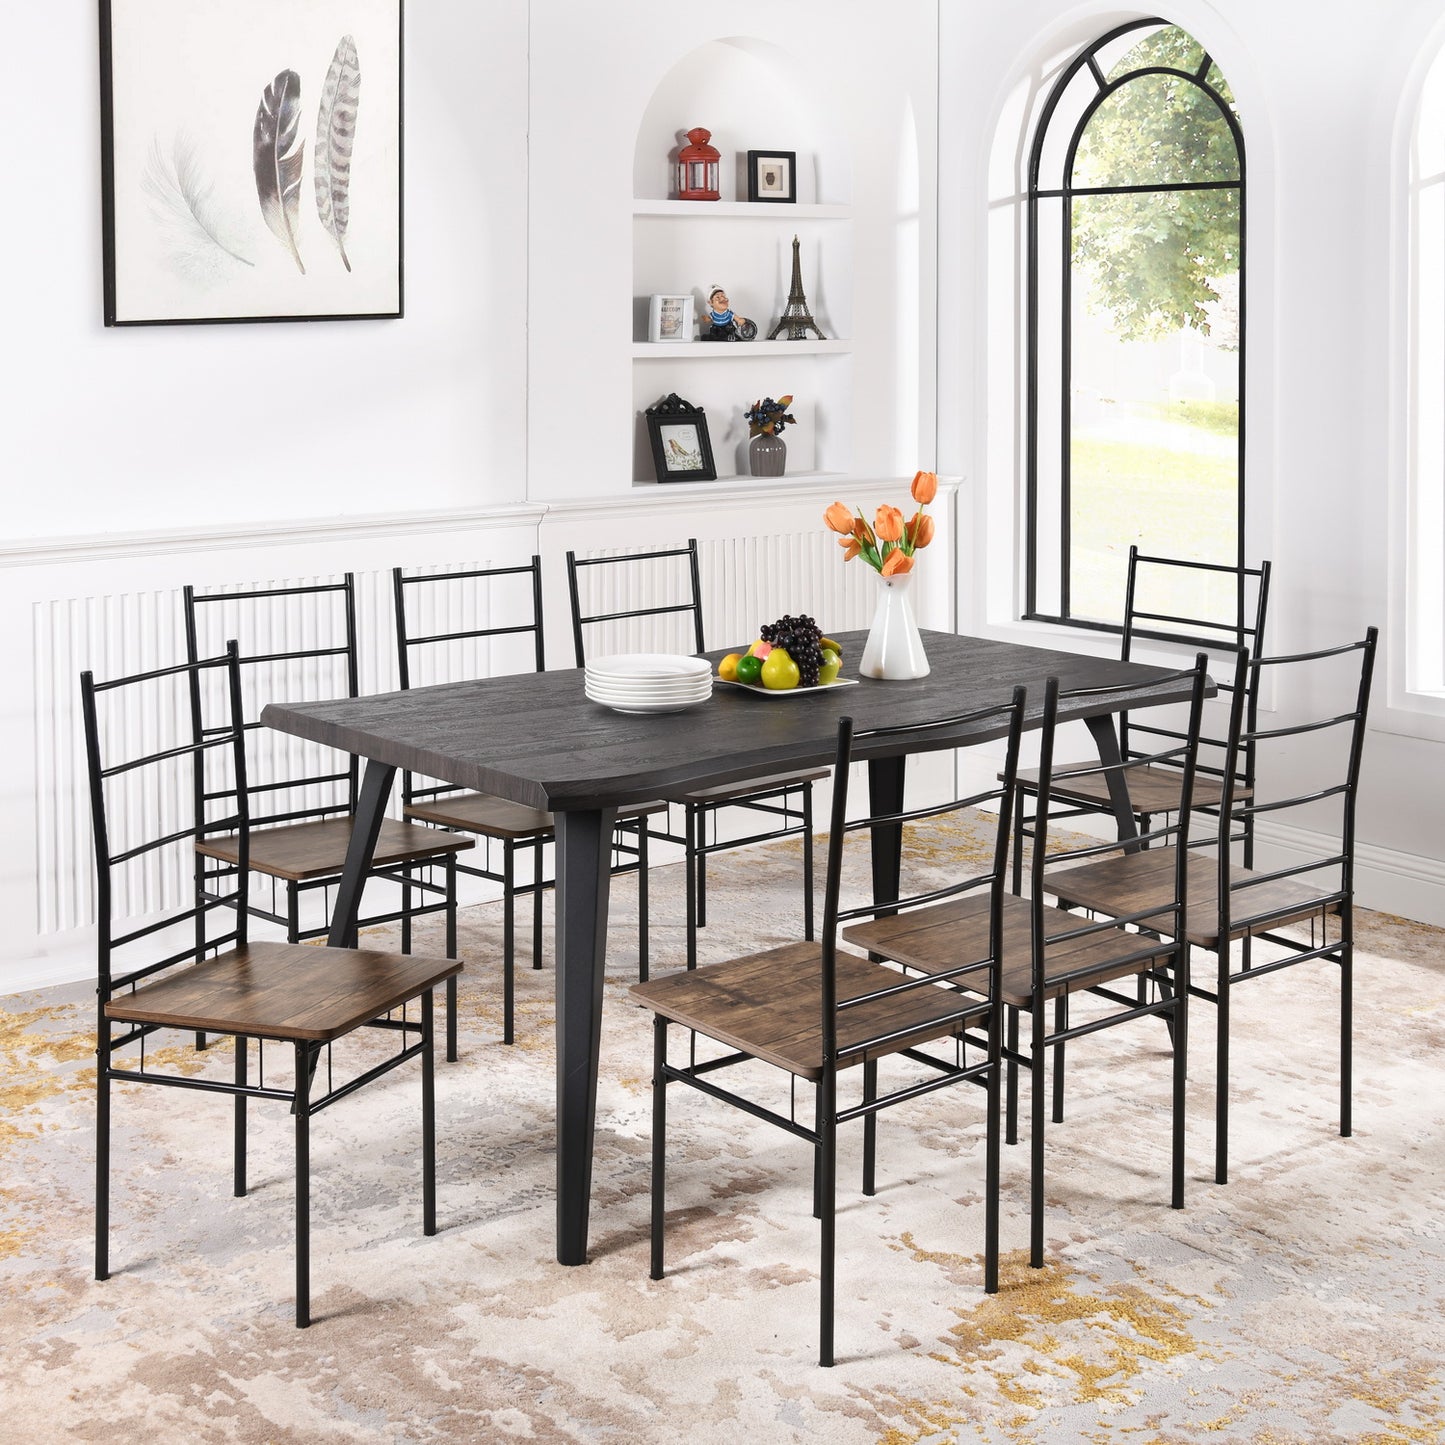 Lot de 8 Chaises de salle à manger, cadre en fer et modèle MDF – Design grain de bois marron – Style industriel